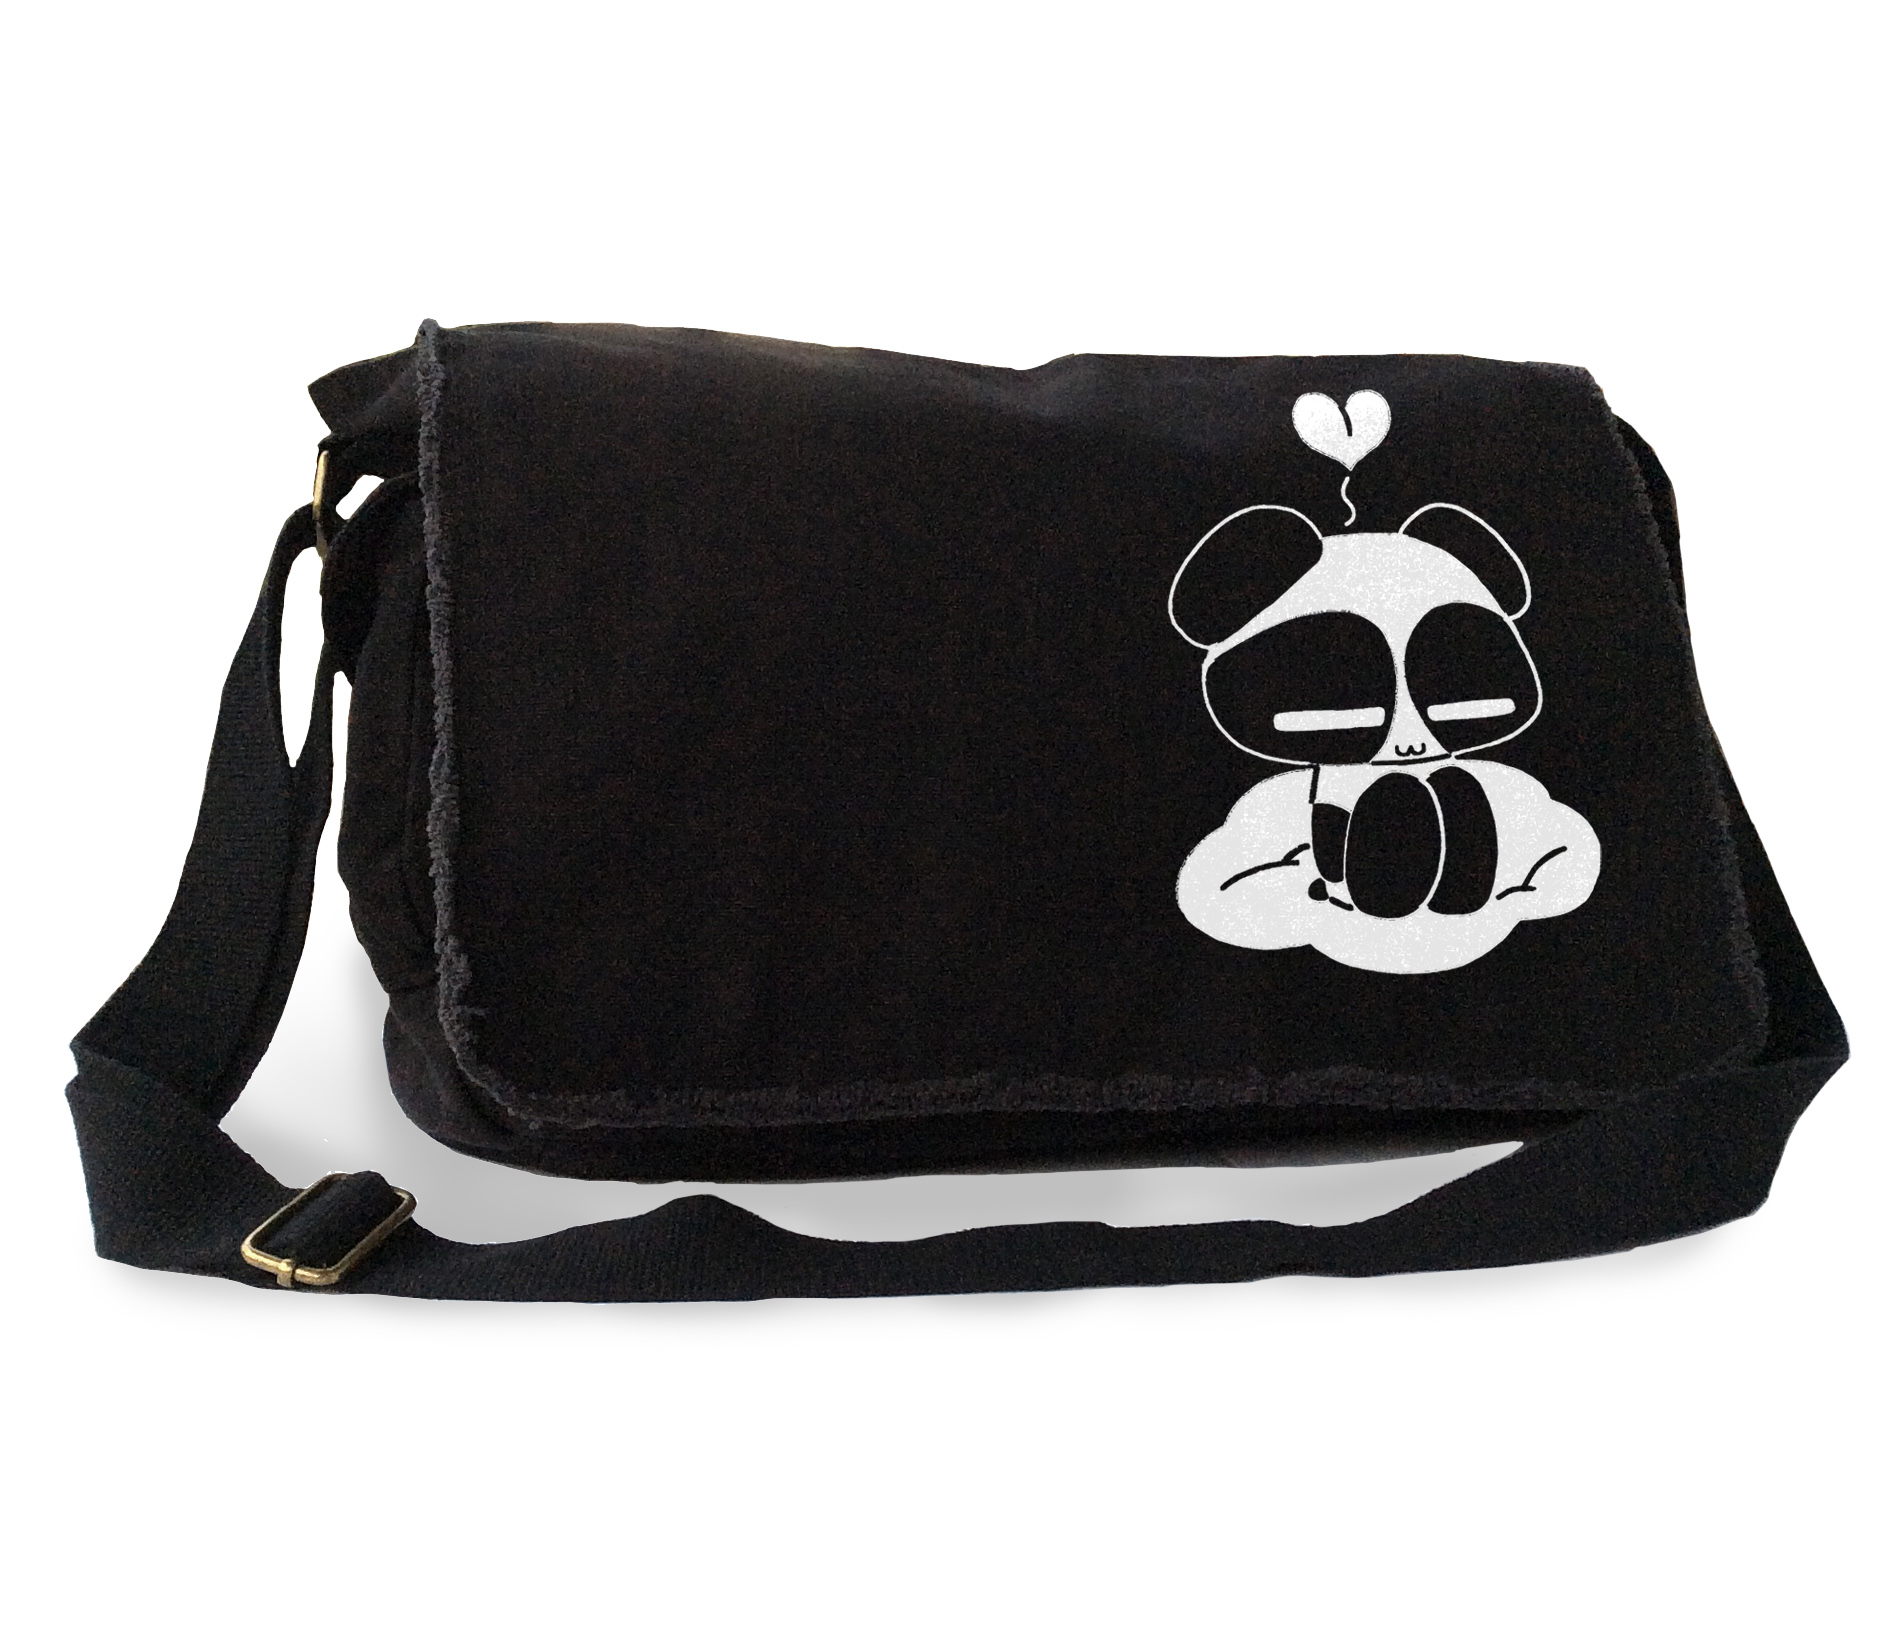 Chibi Goth Panda Messenger Bag - Black